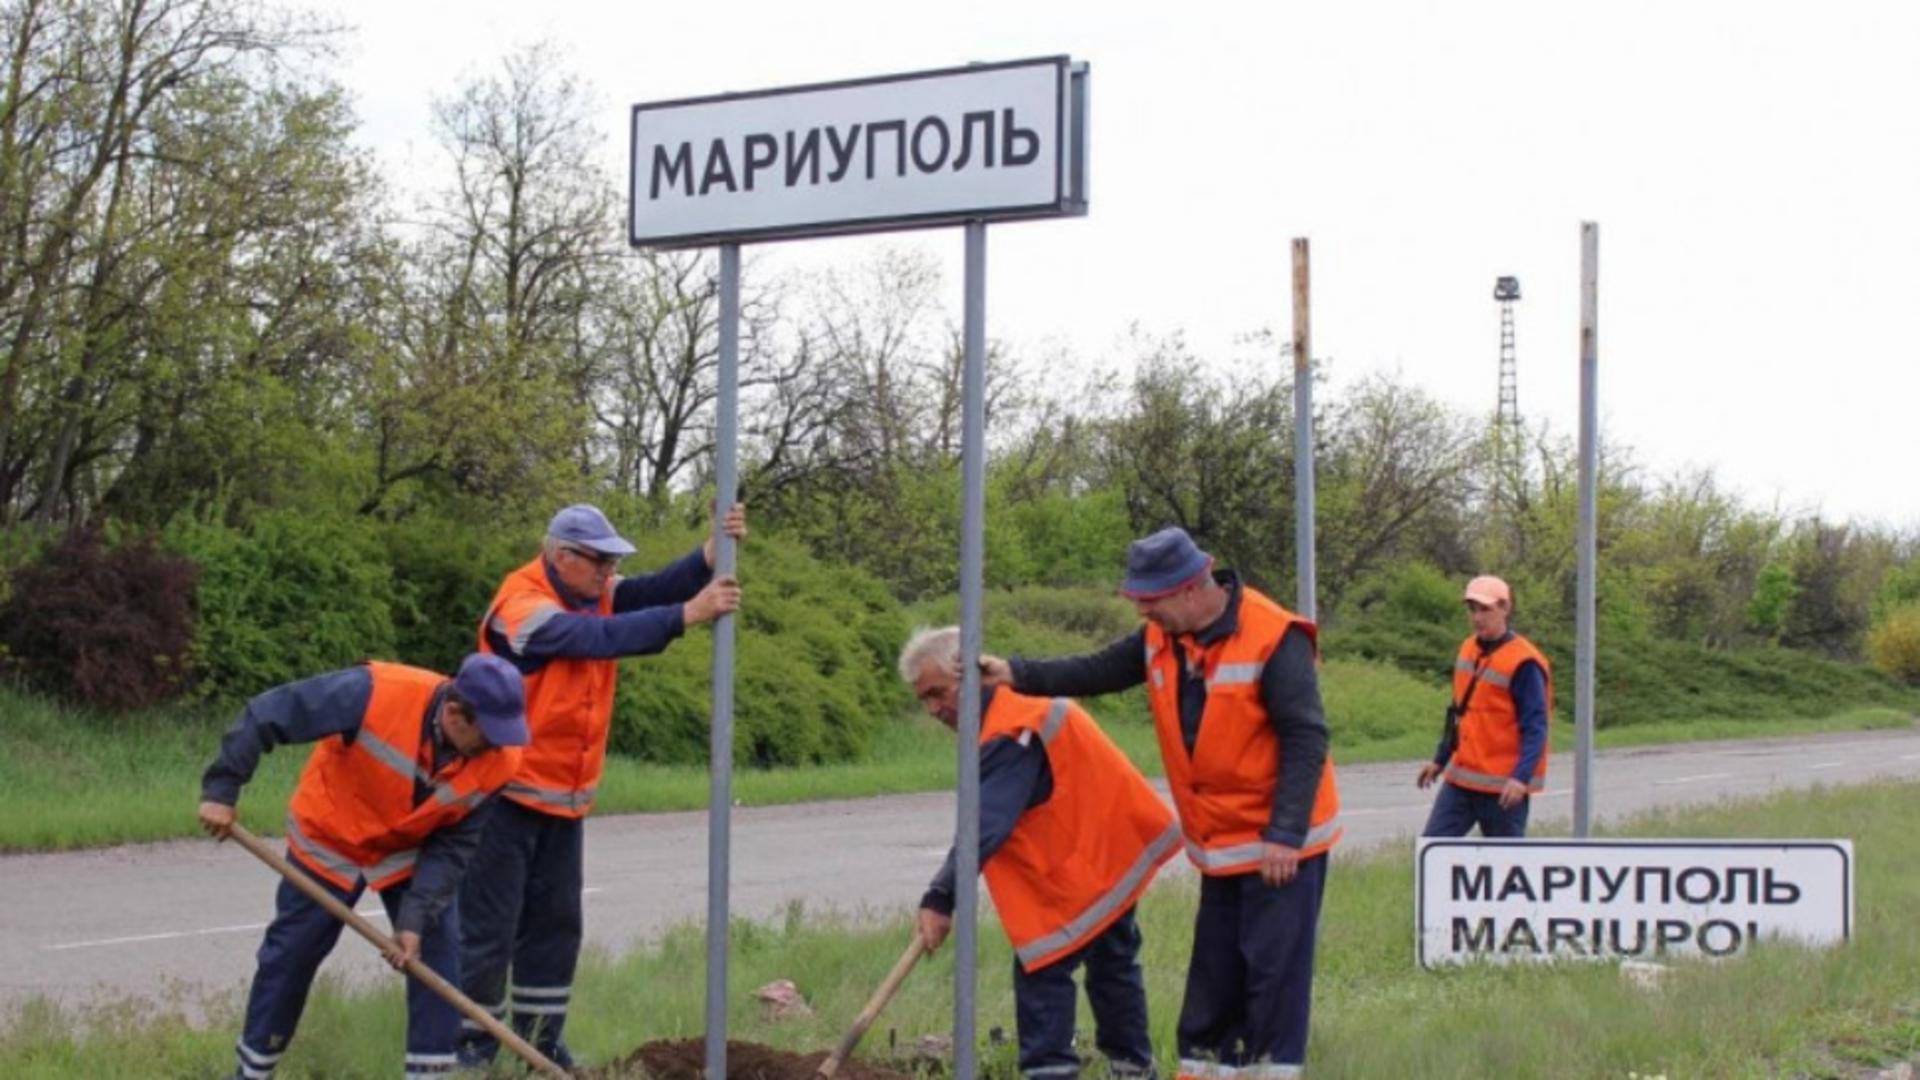 Rușii au înlocuit indicatorul de la intrarea în Mariupol cu unul doar în rusă